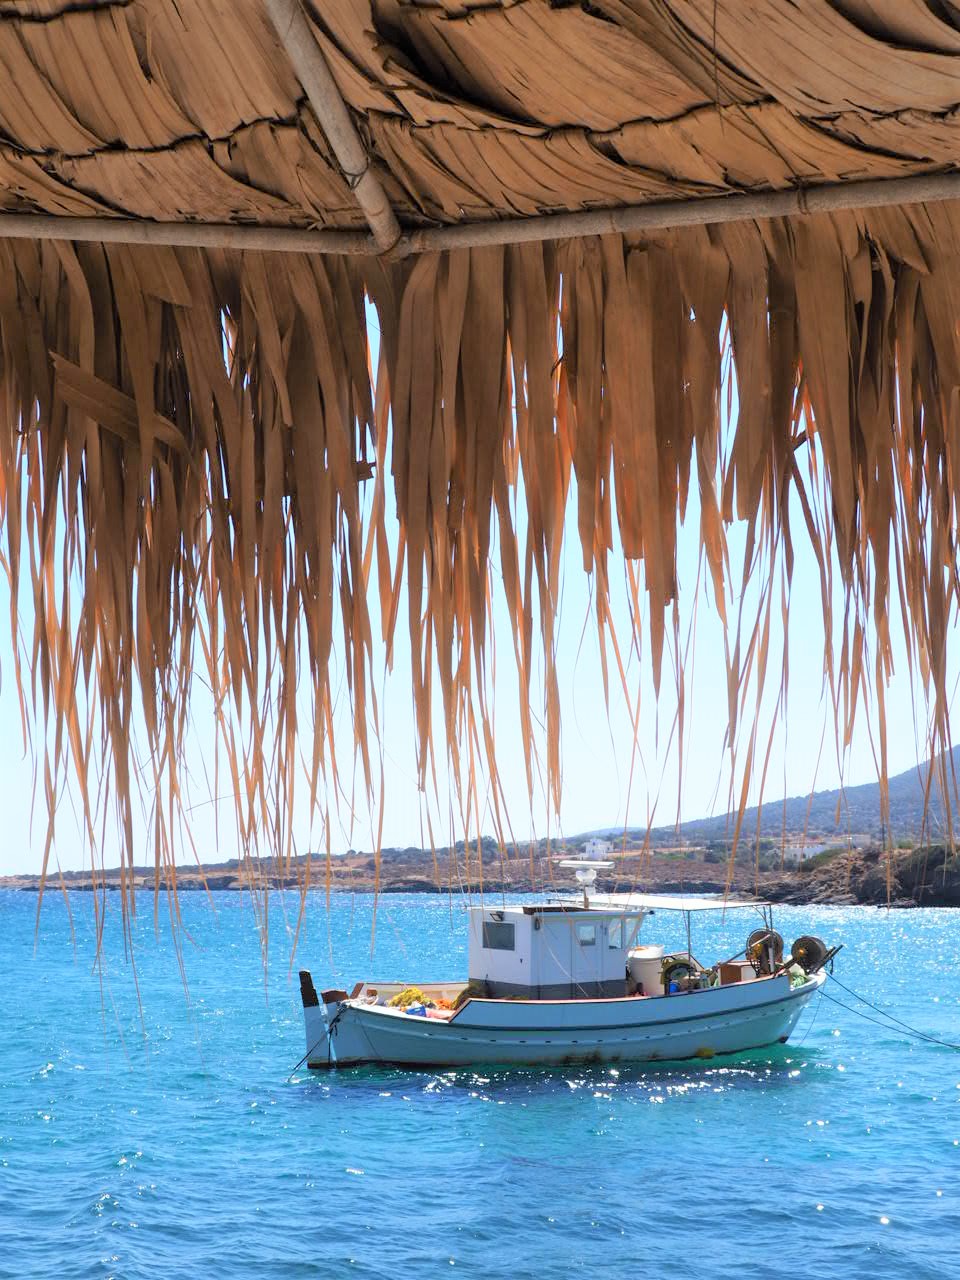 bateau moutsana port de pecheur grece naxos